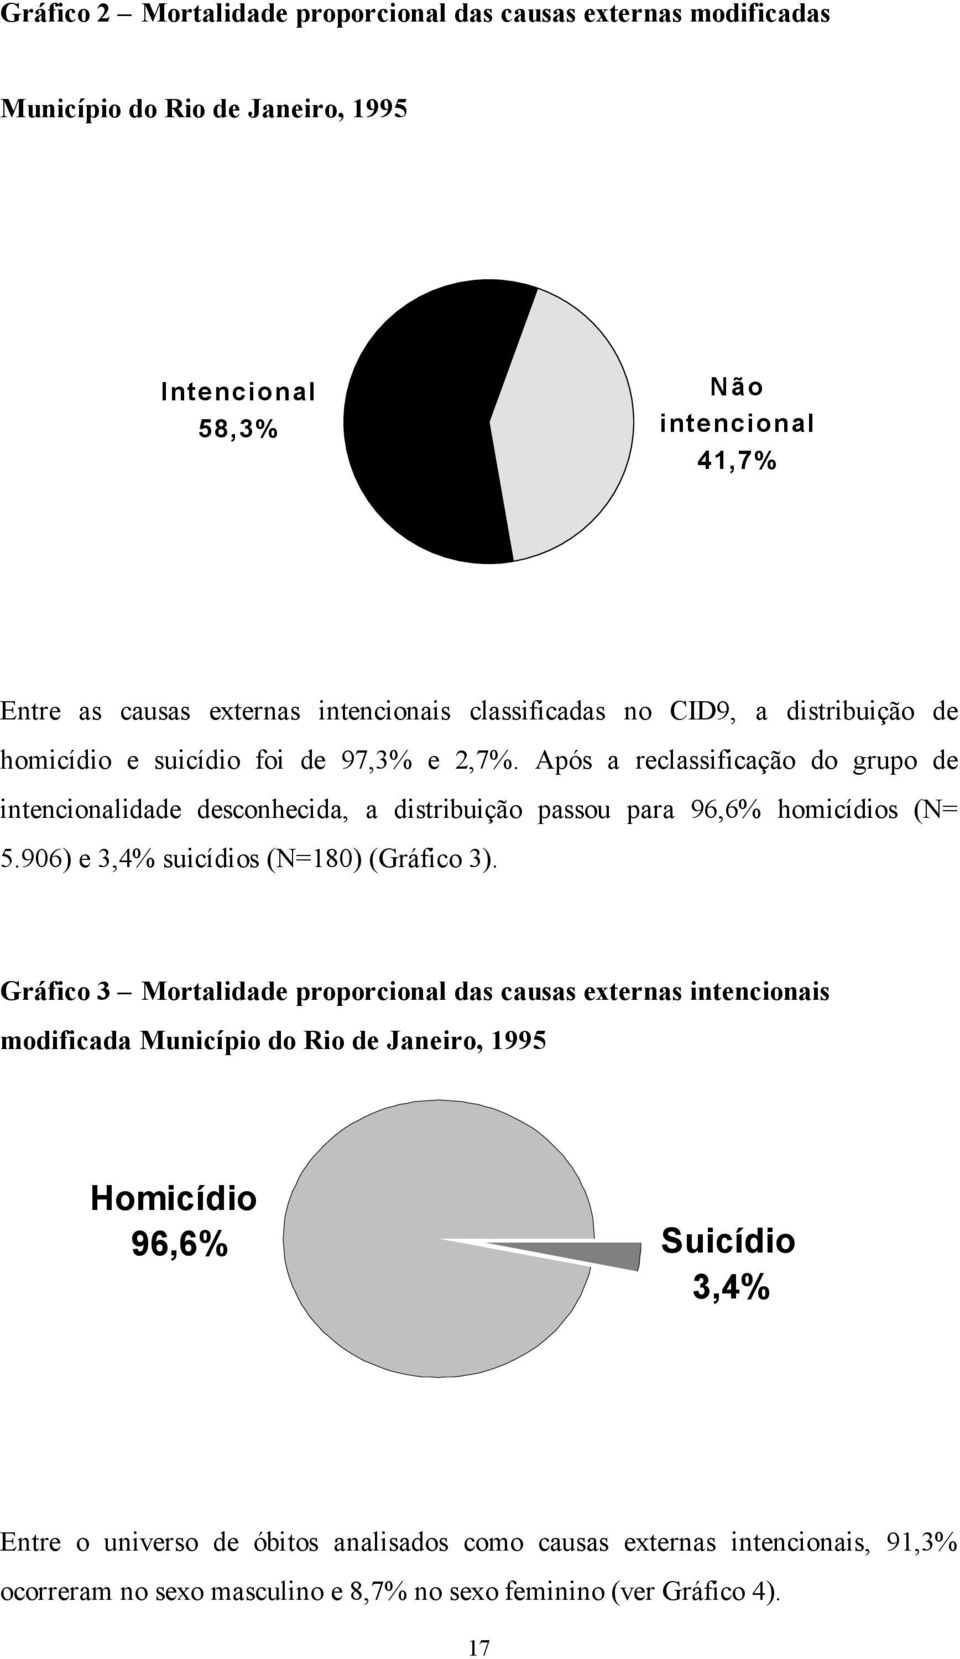 Após a reclassificação do grupo de intencionalidade desconhecida, a distribuição passou para 96,6% homicídios (N= 5.906) e 3,4% suicídios (N=180) (Gráfico 3).